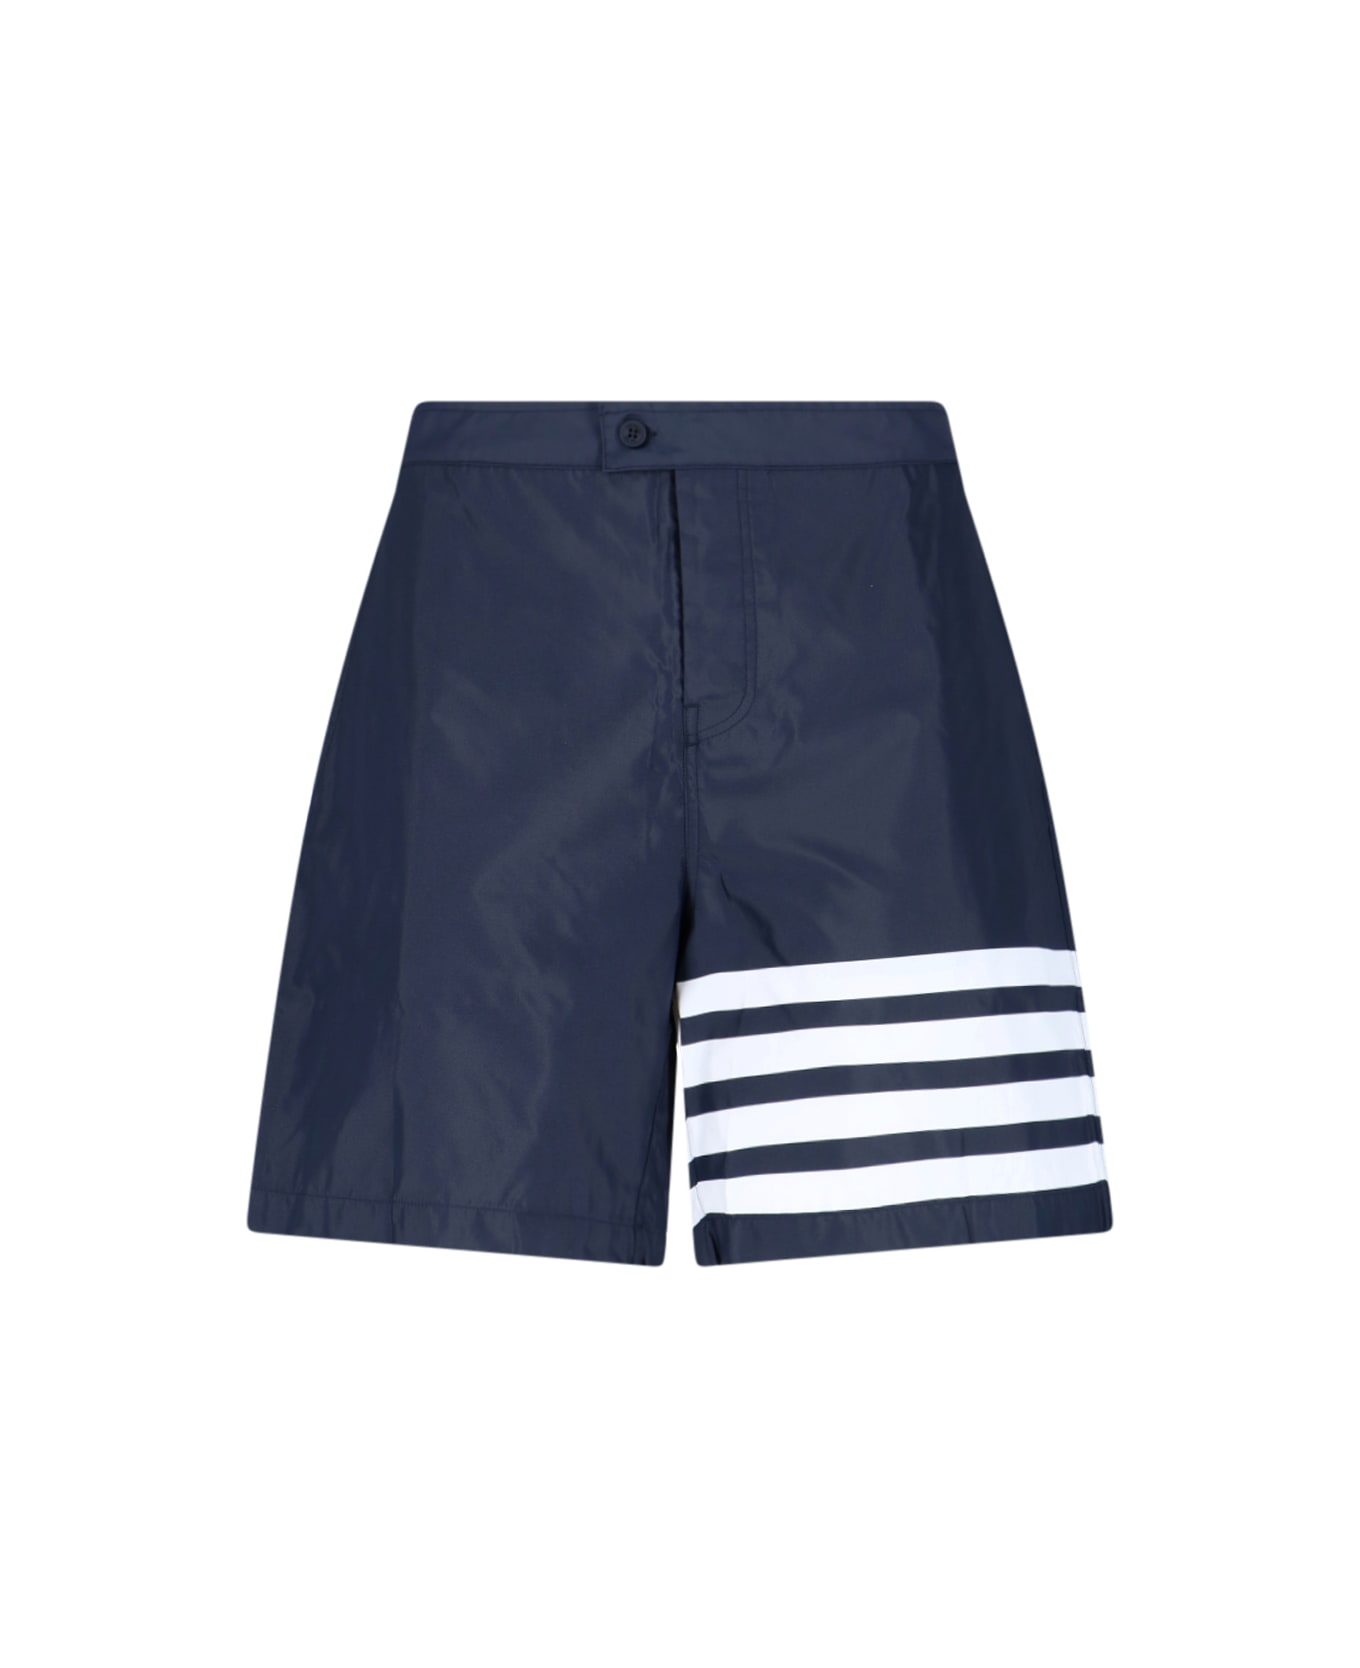 Thom Browne 4-bar Board Shorts - Blue